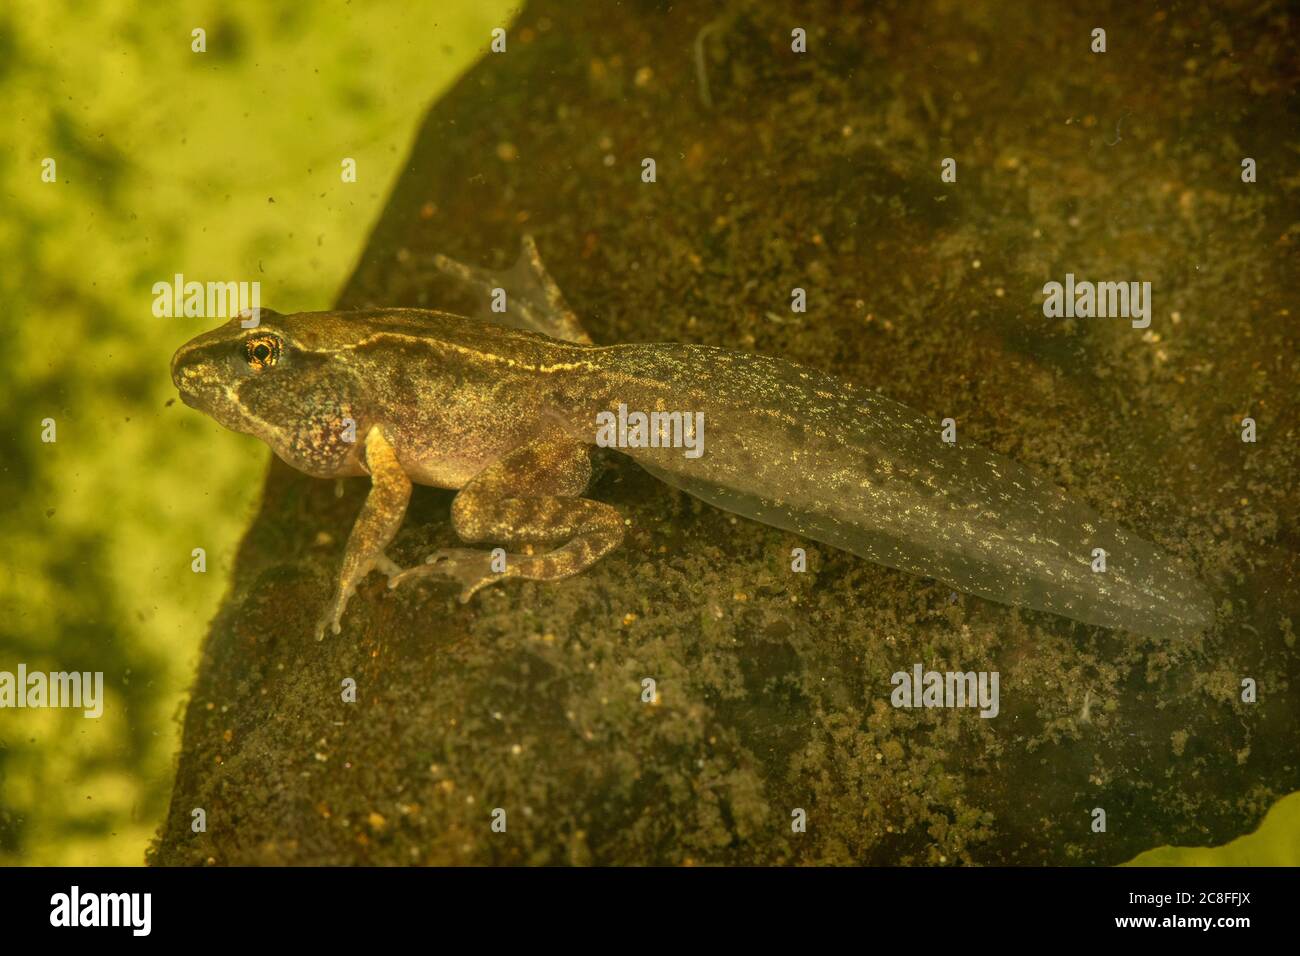 common frog, grass frog (Rana temporaria), four-legged tadpole, Germany Stock Photo